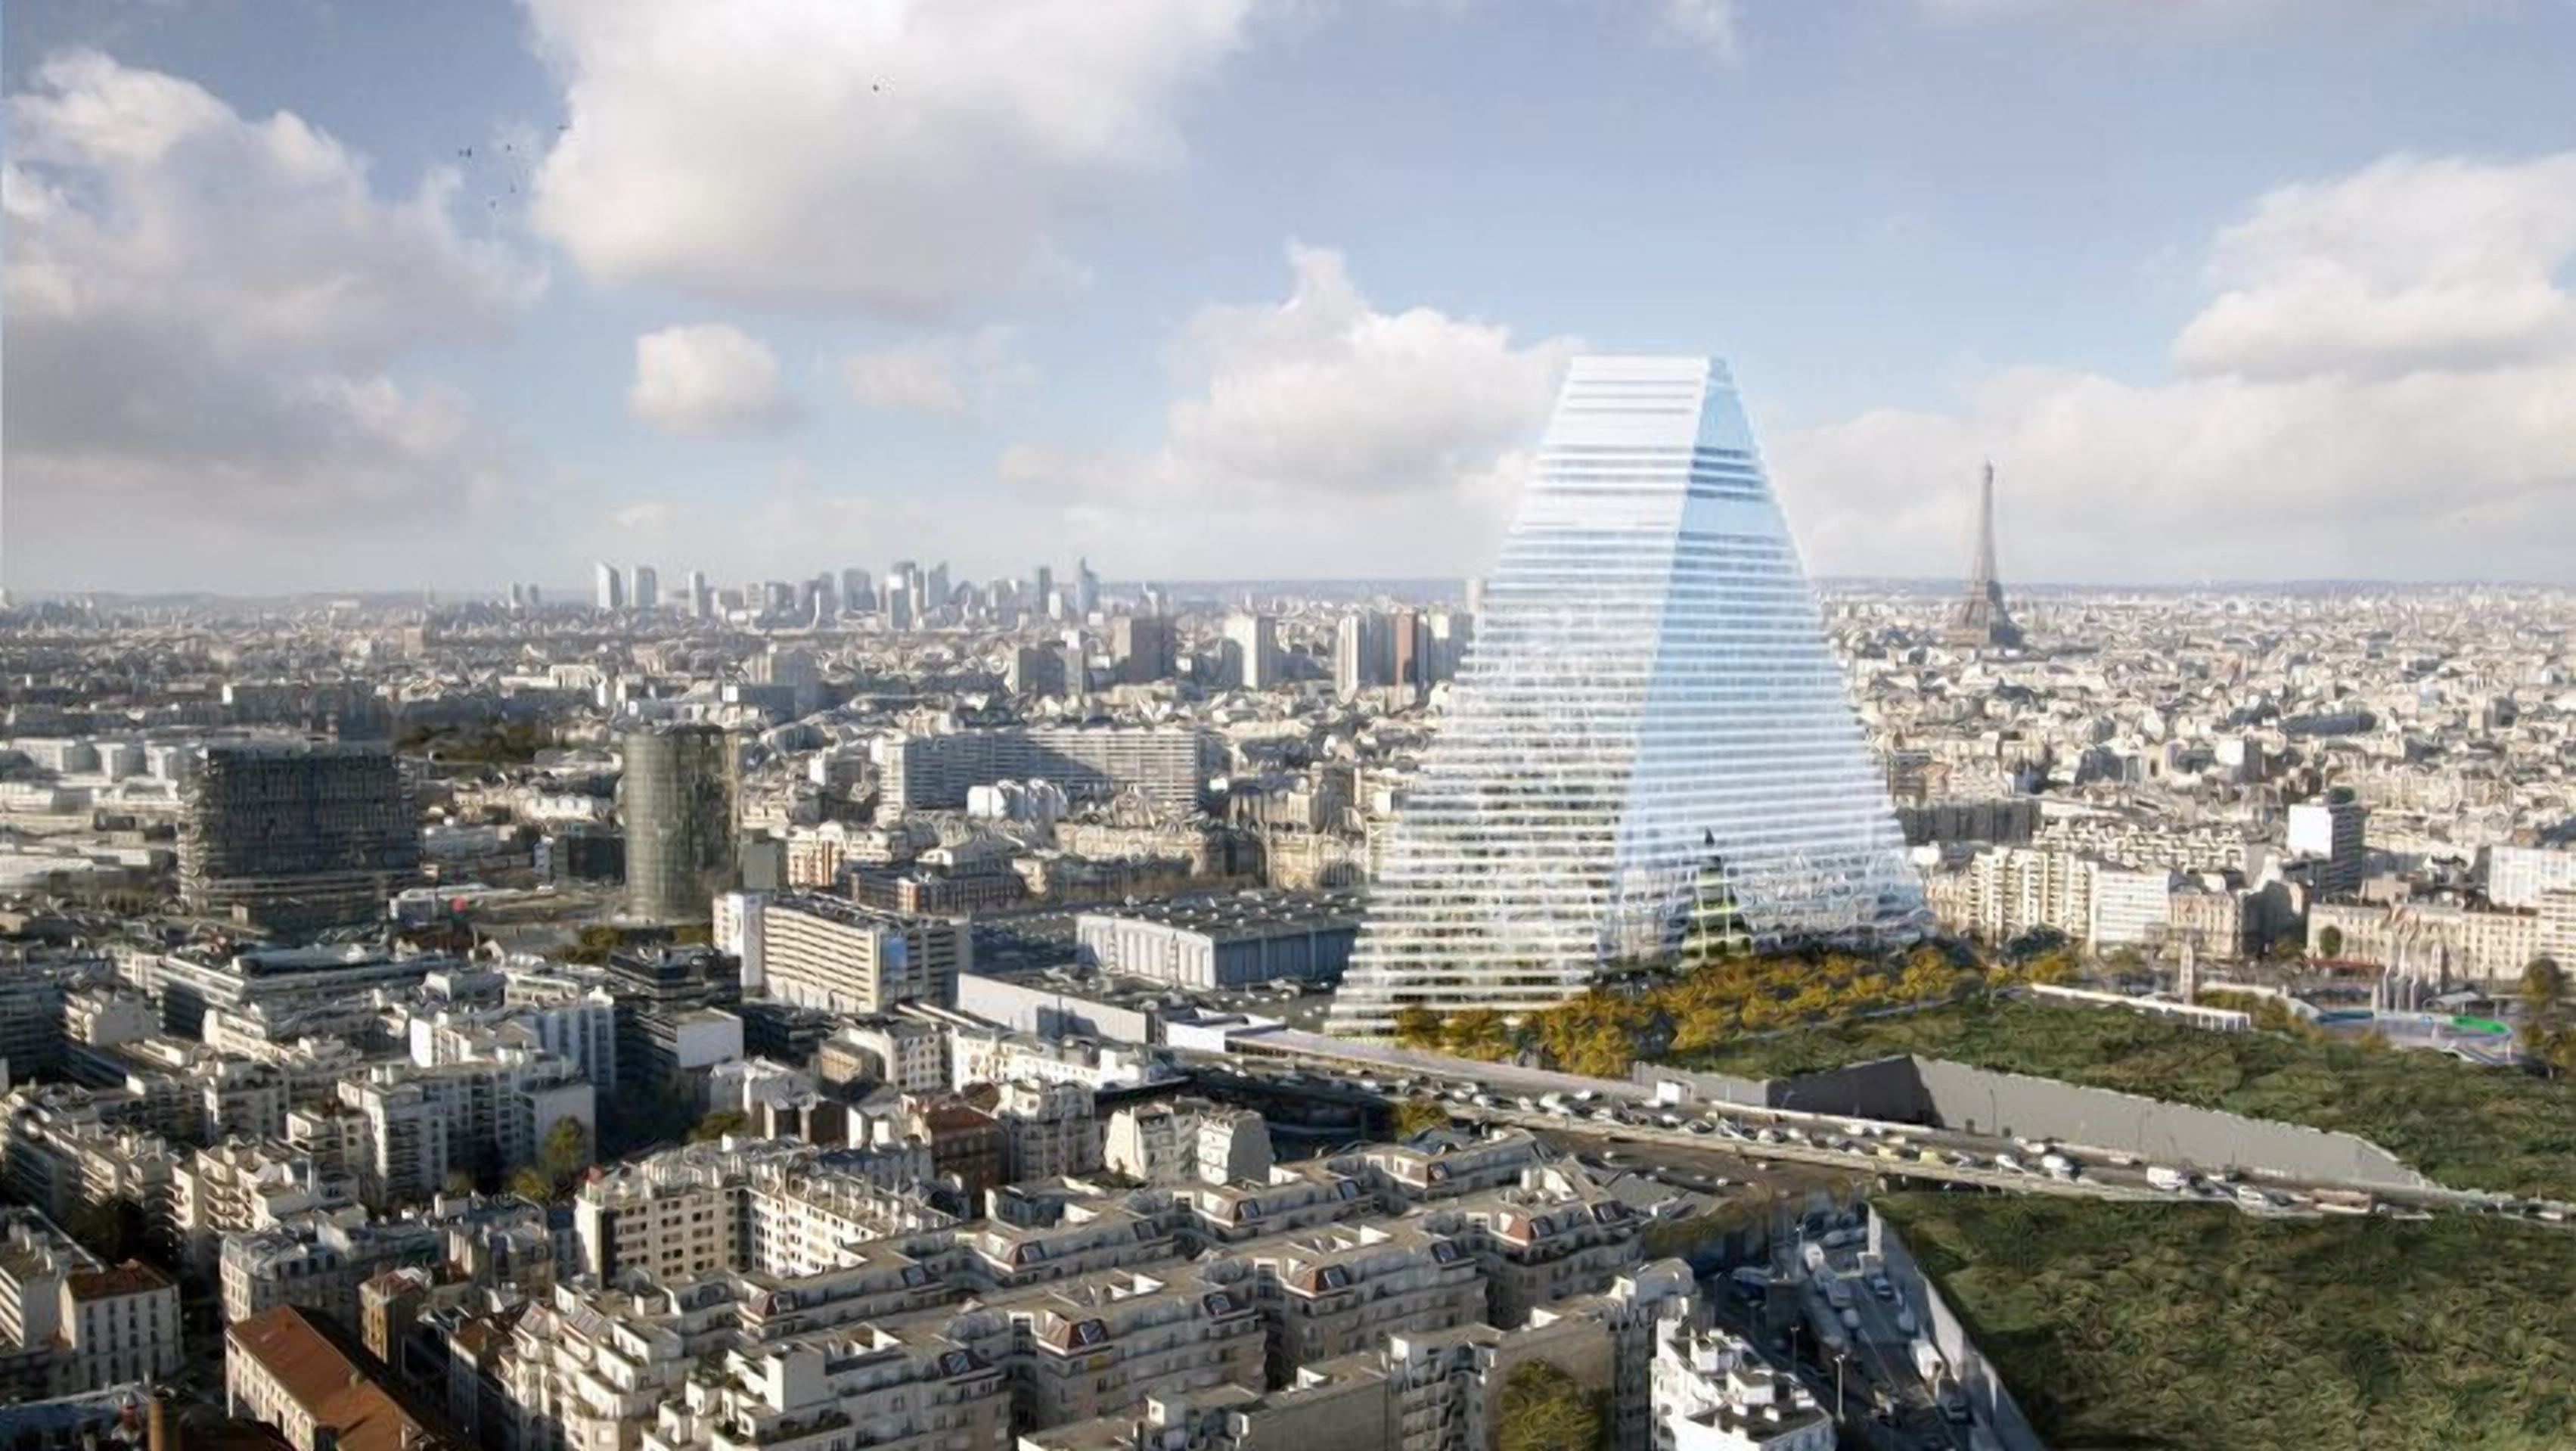 Ви такого ще не бачили: у Парижі зведуть дивовижний хмарочос у формі трикутника - Дизайн 24